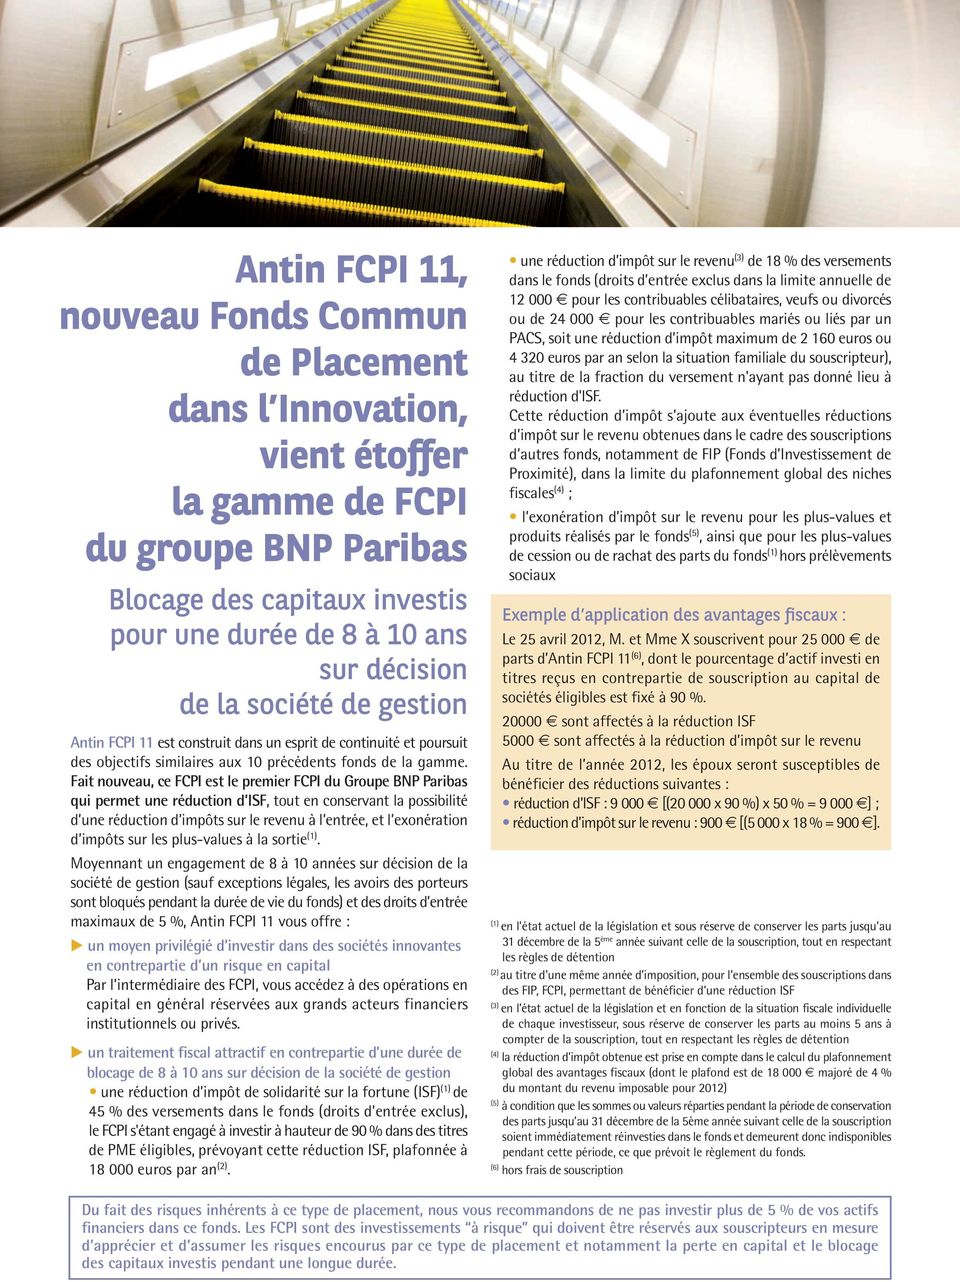 Fait nouveau, ce FCPI est le premier FCPI du Groupe BNP Paribas qui permet une réduction d ISF, tout en conservant la possibilité d une réduction d impôts sur le revenu à l entrée, et l exonération d